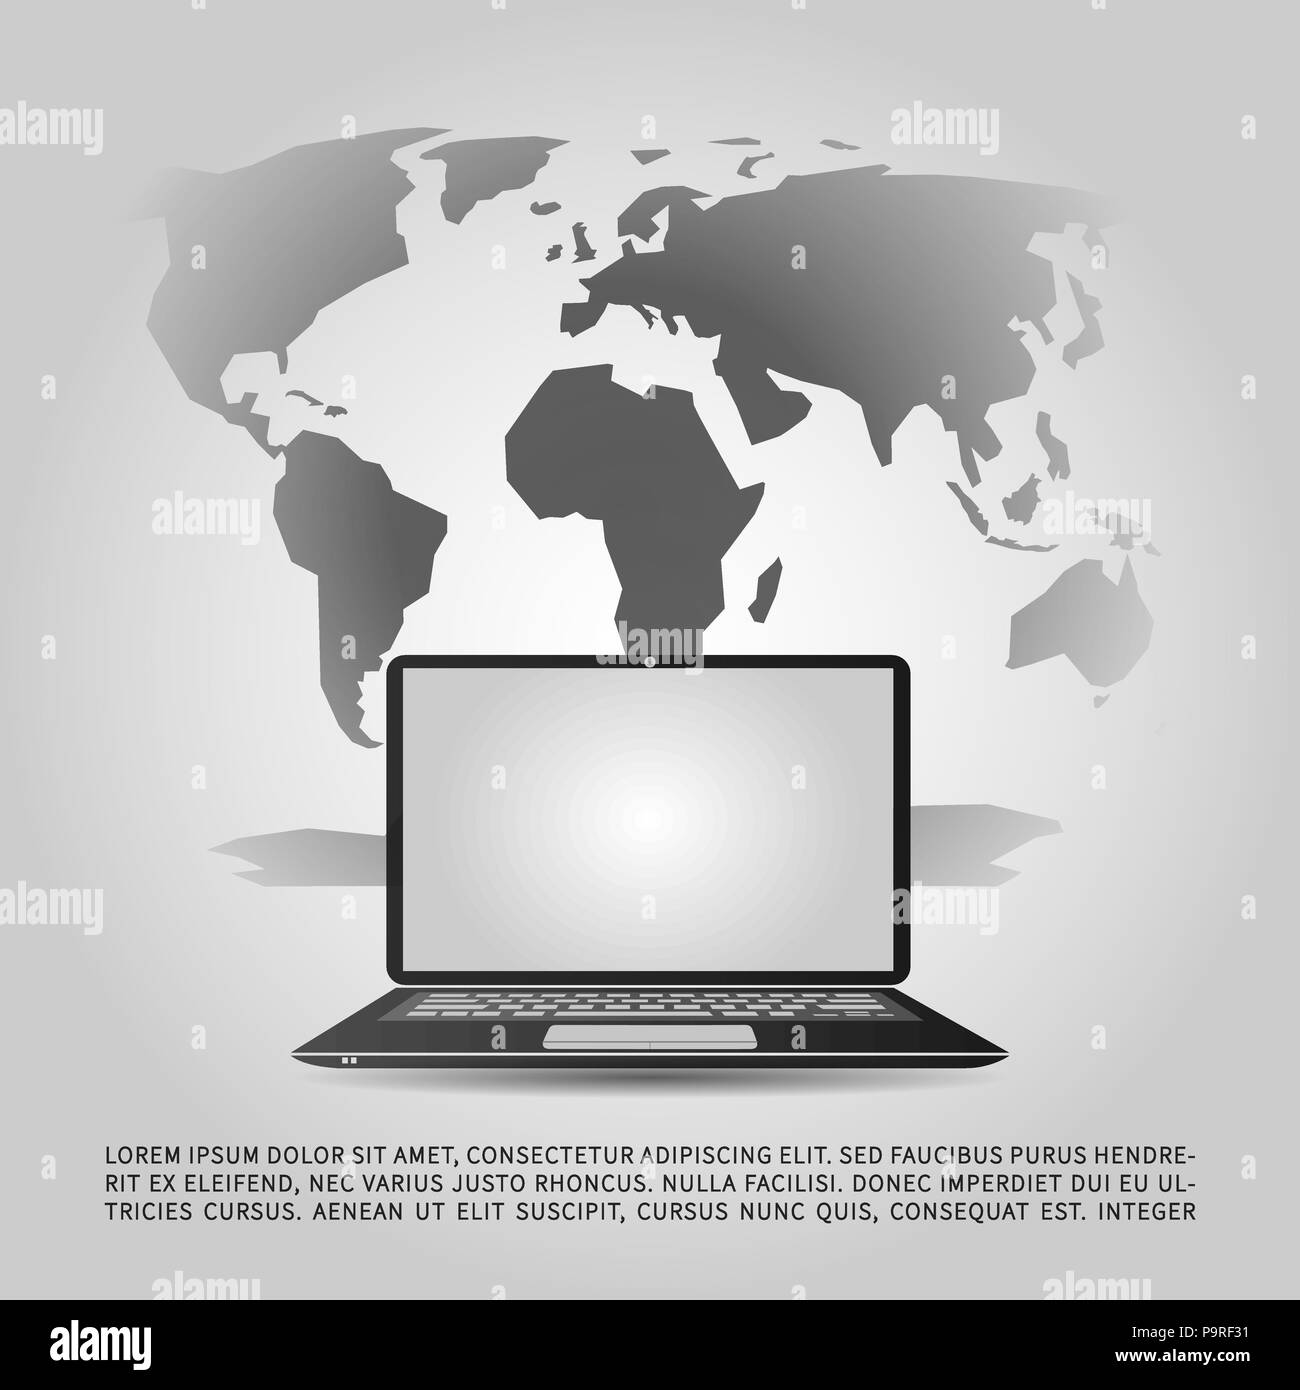 Abstract il Cloud Computing e la Rete Globale Collegamenti Concept Design con computer laptop e dispositivi mobili wireless, trasparente mappa del mondo - Illustrazione in formato vettoriale modificabile Illustrazione Vettoriale